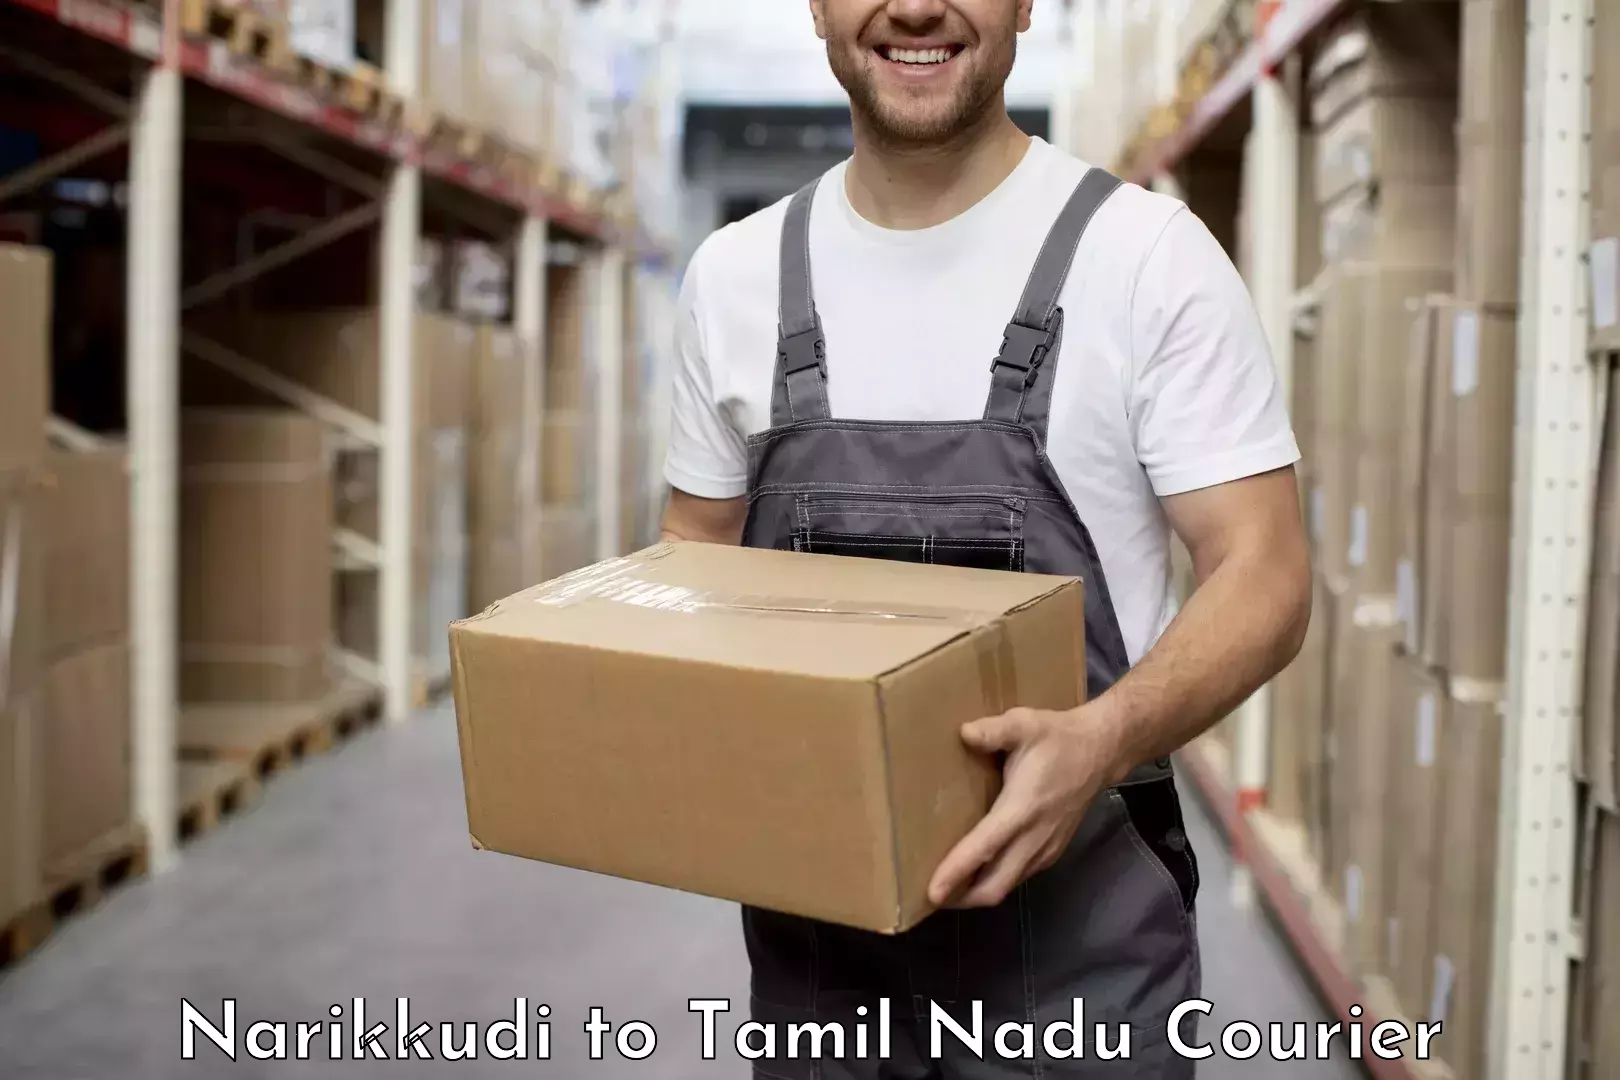 Affordable international shipping Narikkudi to Thanjavur